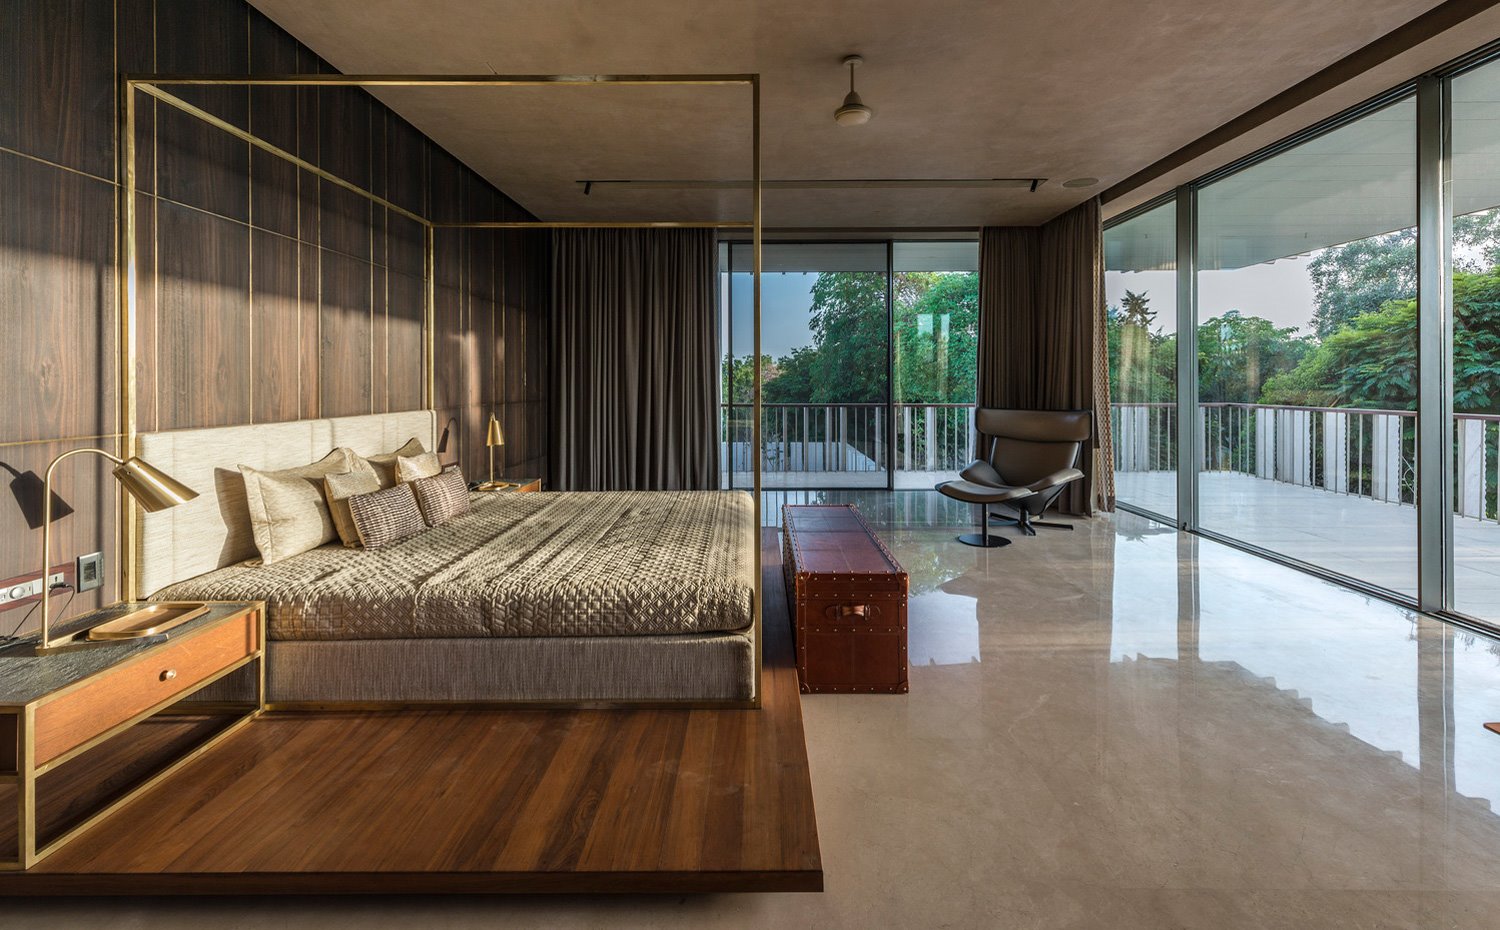 Dormitorio con cama sobre base de madera, estructura dorada y revestimiento de pared de madera, cerramientos acristalados